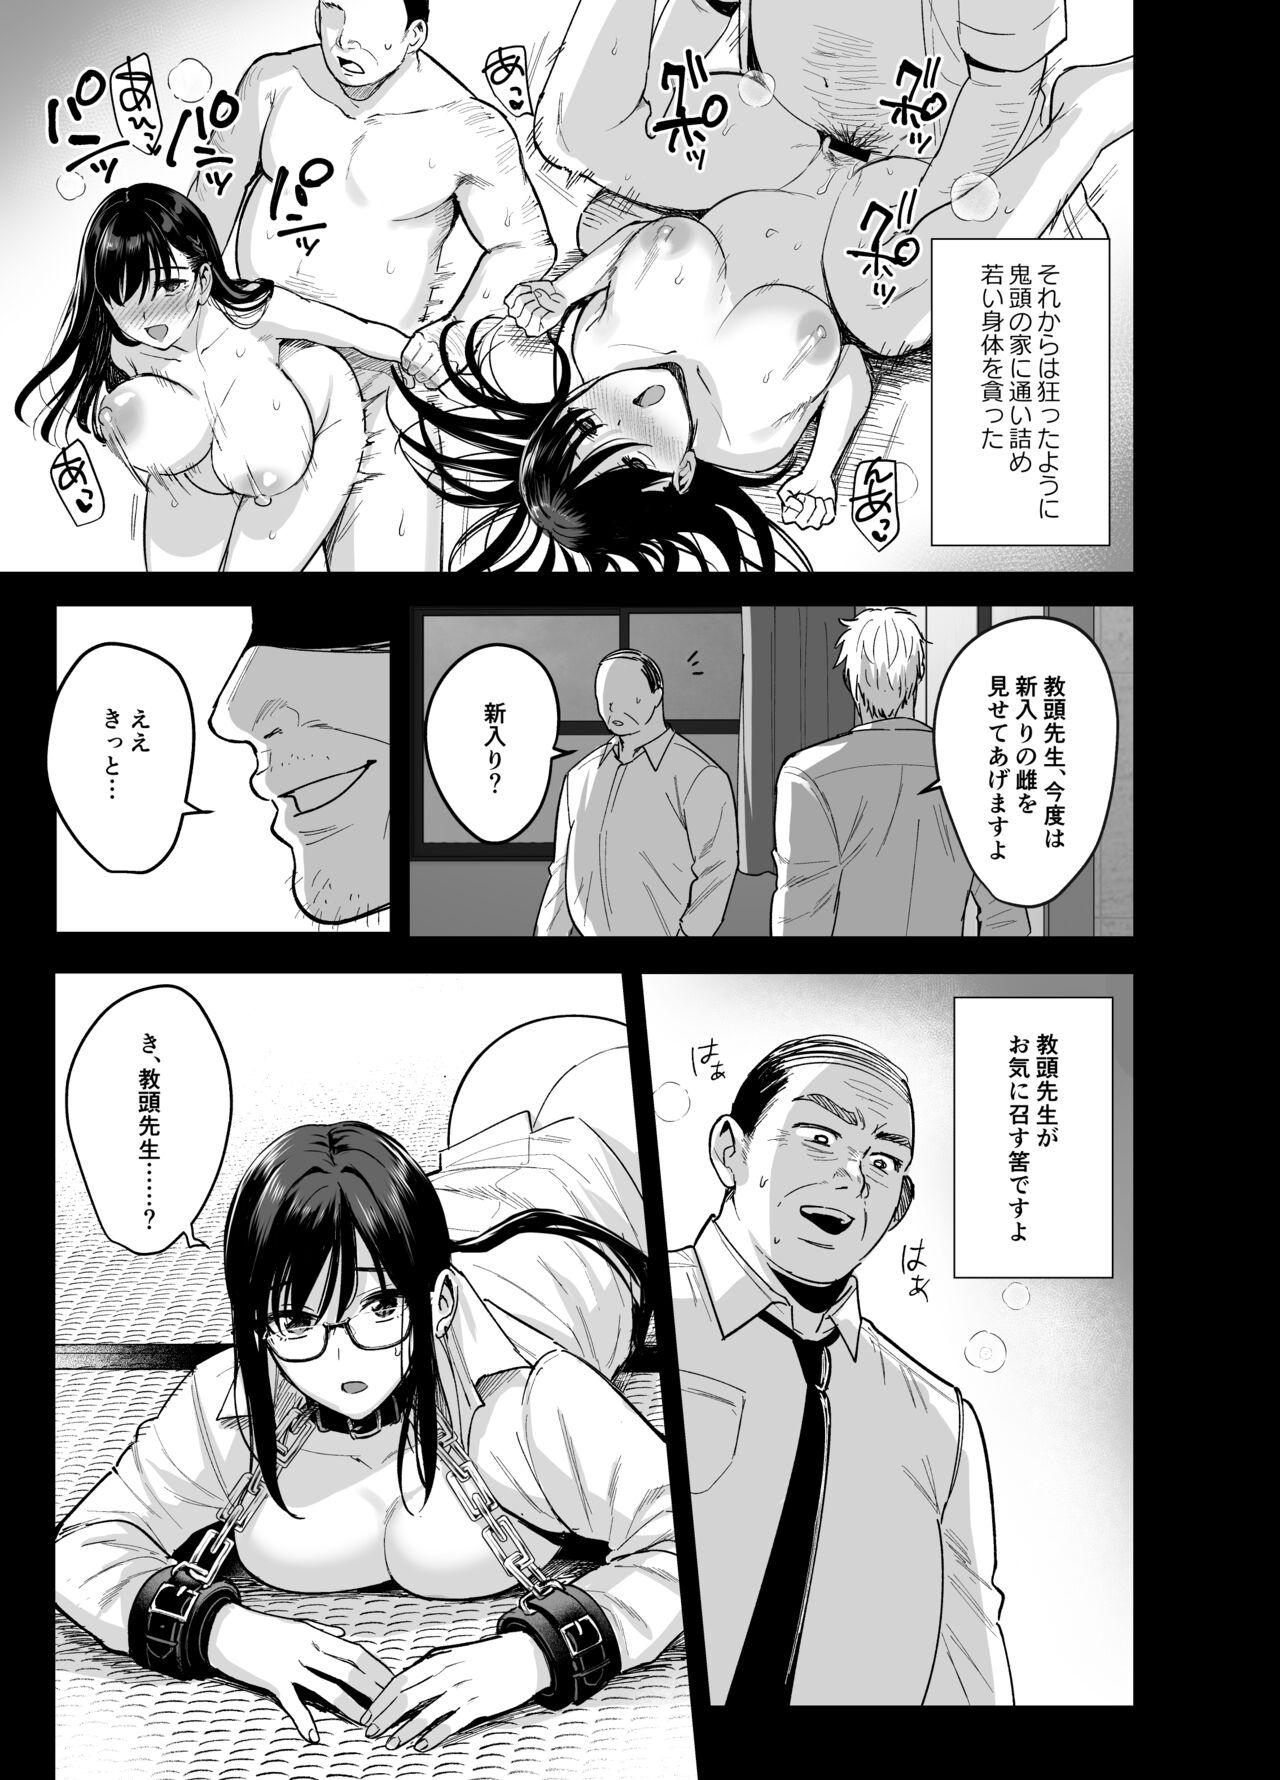 Perverted Toshoshitsu no Kanojo 6 - Original Sluts - Page 8